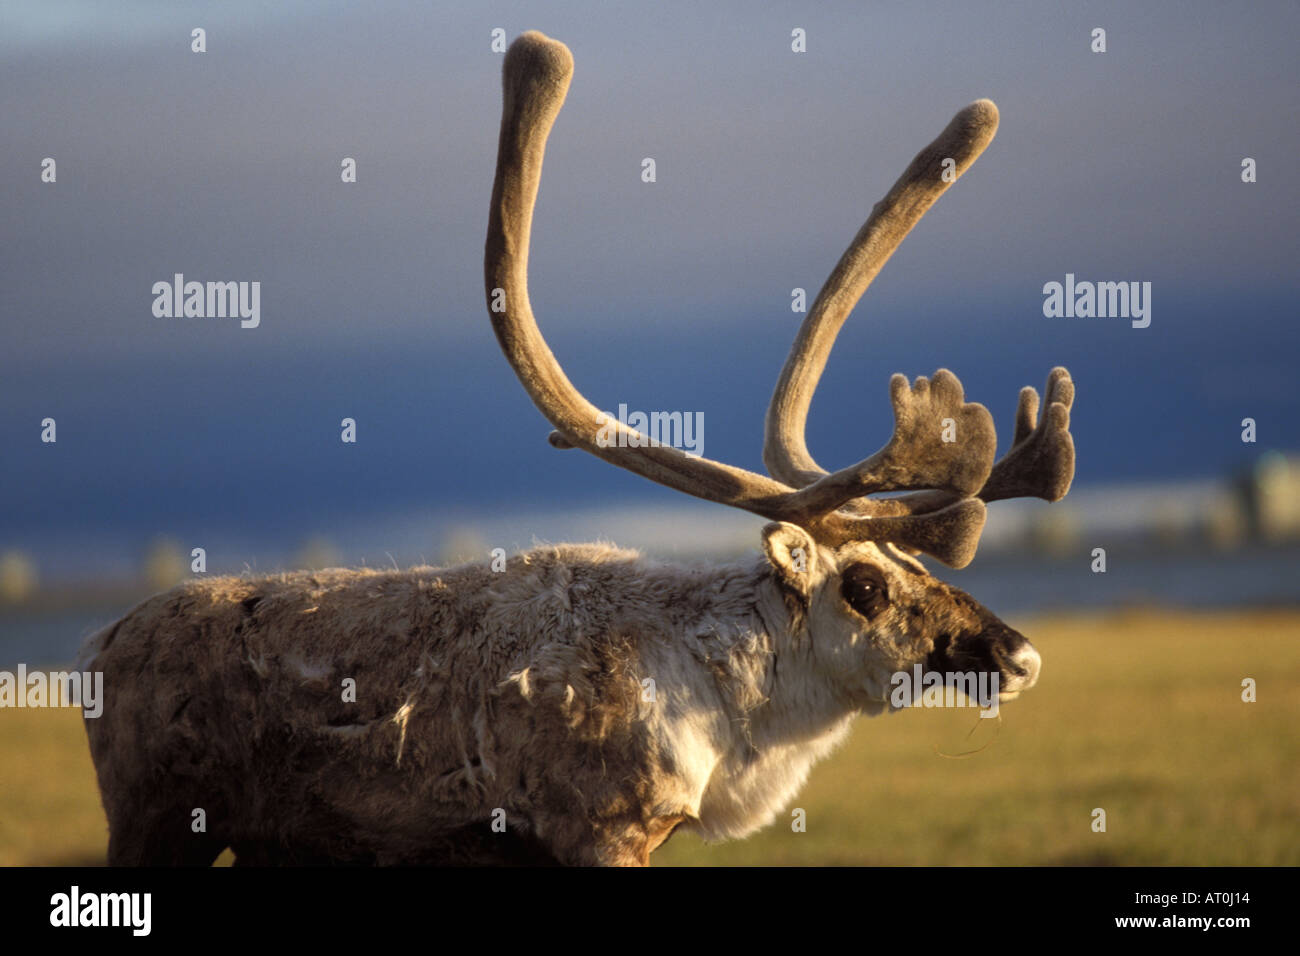 Le caribou de la toundra Rangifer tarandus bull avec ses bois de velours plaine côtière du centre de l'Arctique de l'Alaska North Slope Banque D'Images